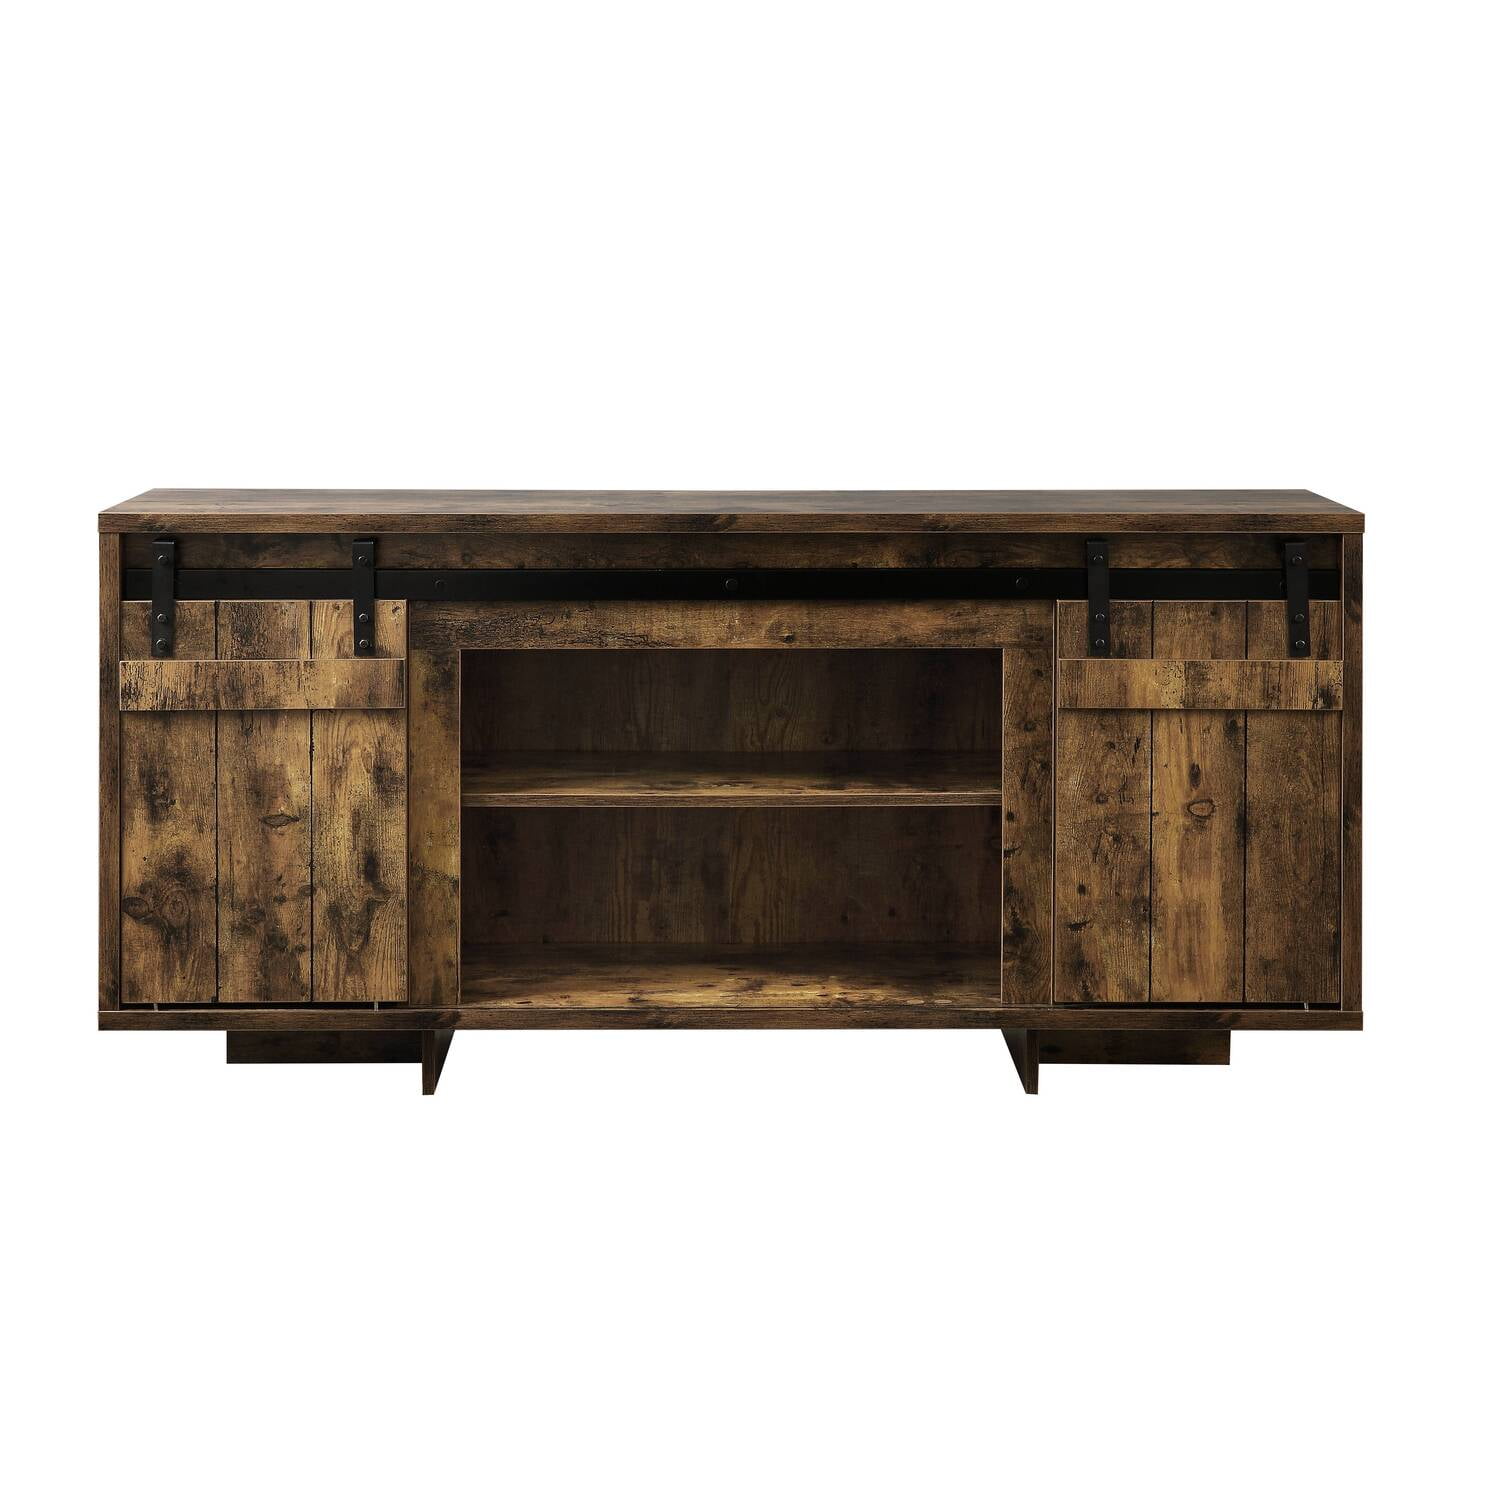 Picture of Acme Furniture 91610 60 x 16 x 29 in. Bellarosa TV Stand, Rustic Oak